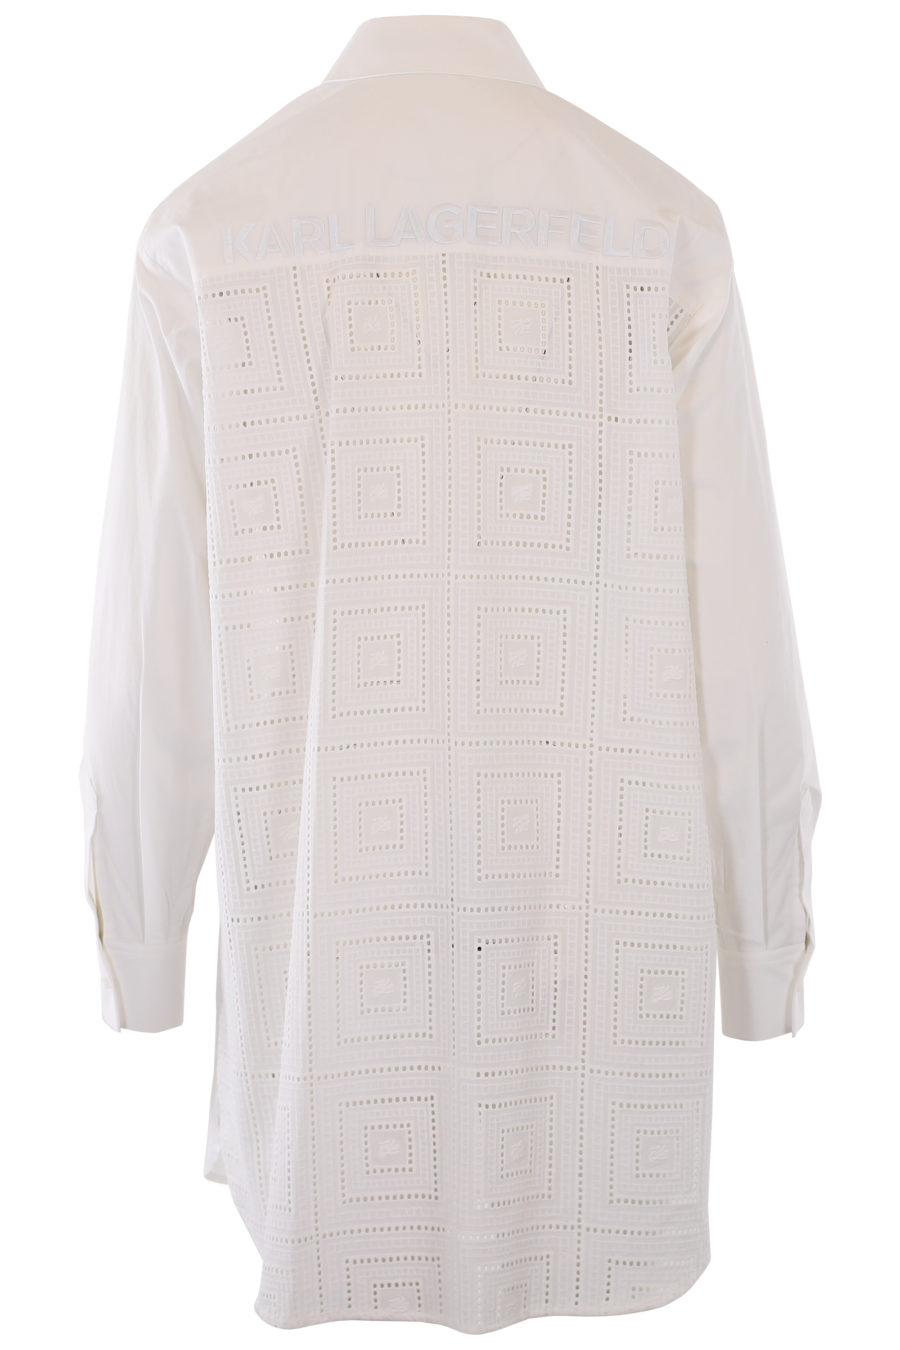 Longue chemise blanche avec logo et détails brodés - IMG 1246